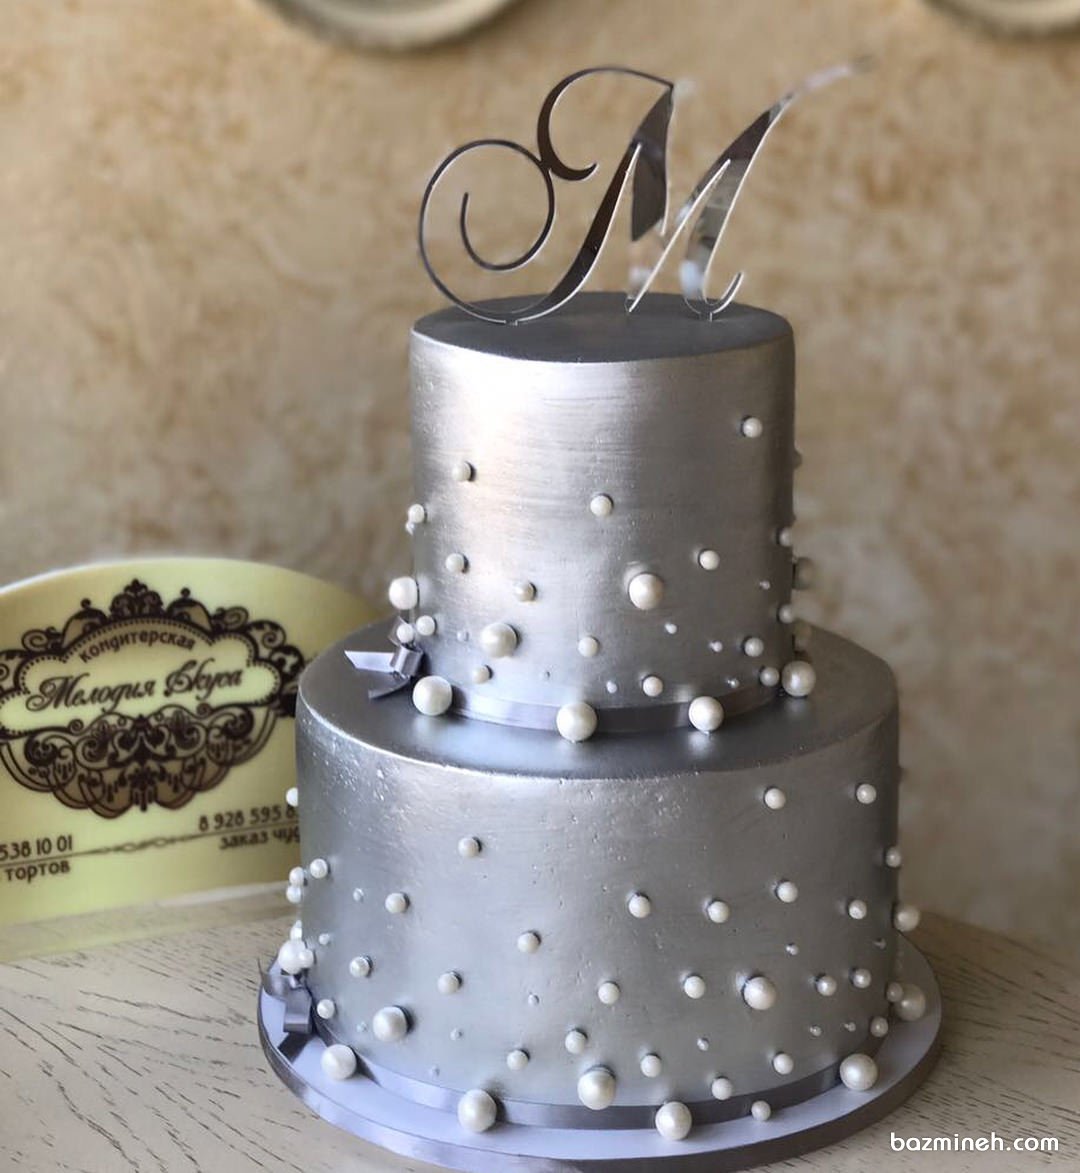 کیک دو طبقه جشن تولد با تم نقره ای تزیین شده با مرواریدهای صدفی